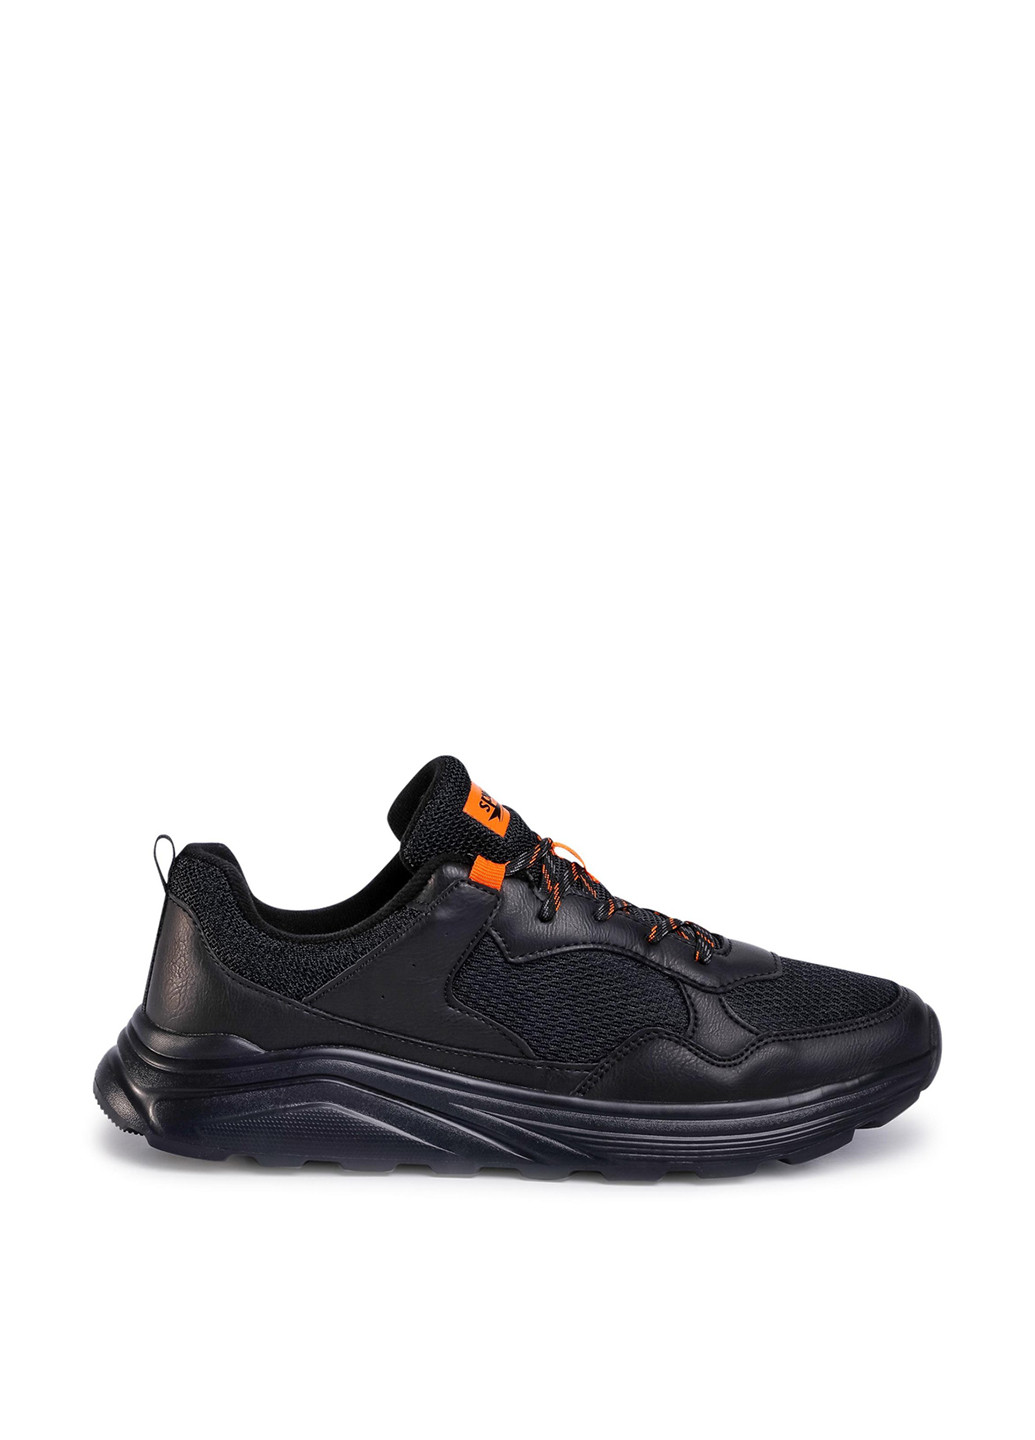 Черные демисезонные кросівки mp-s20c765a-1 Sprandi